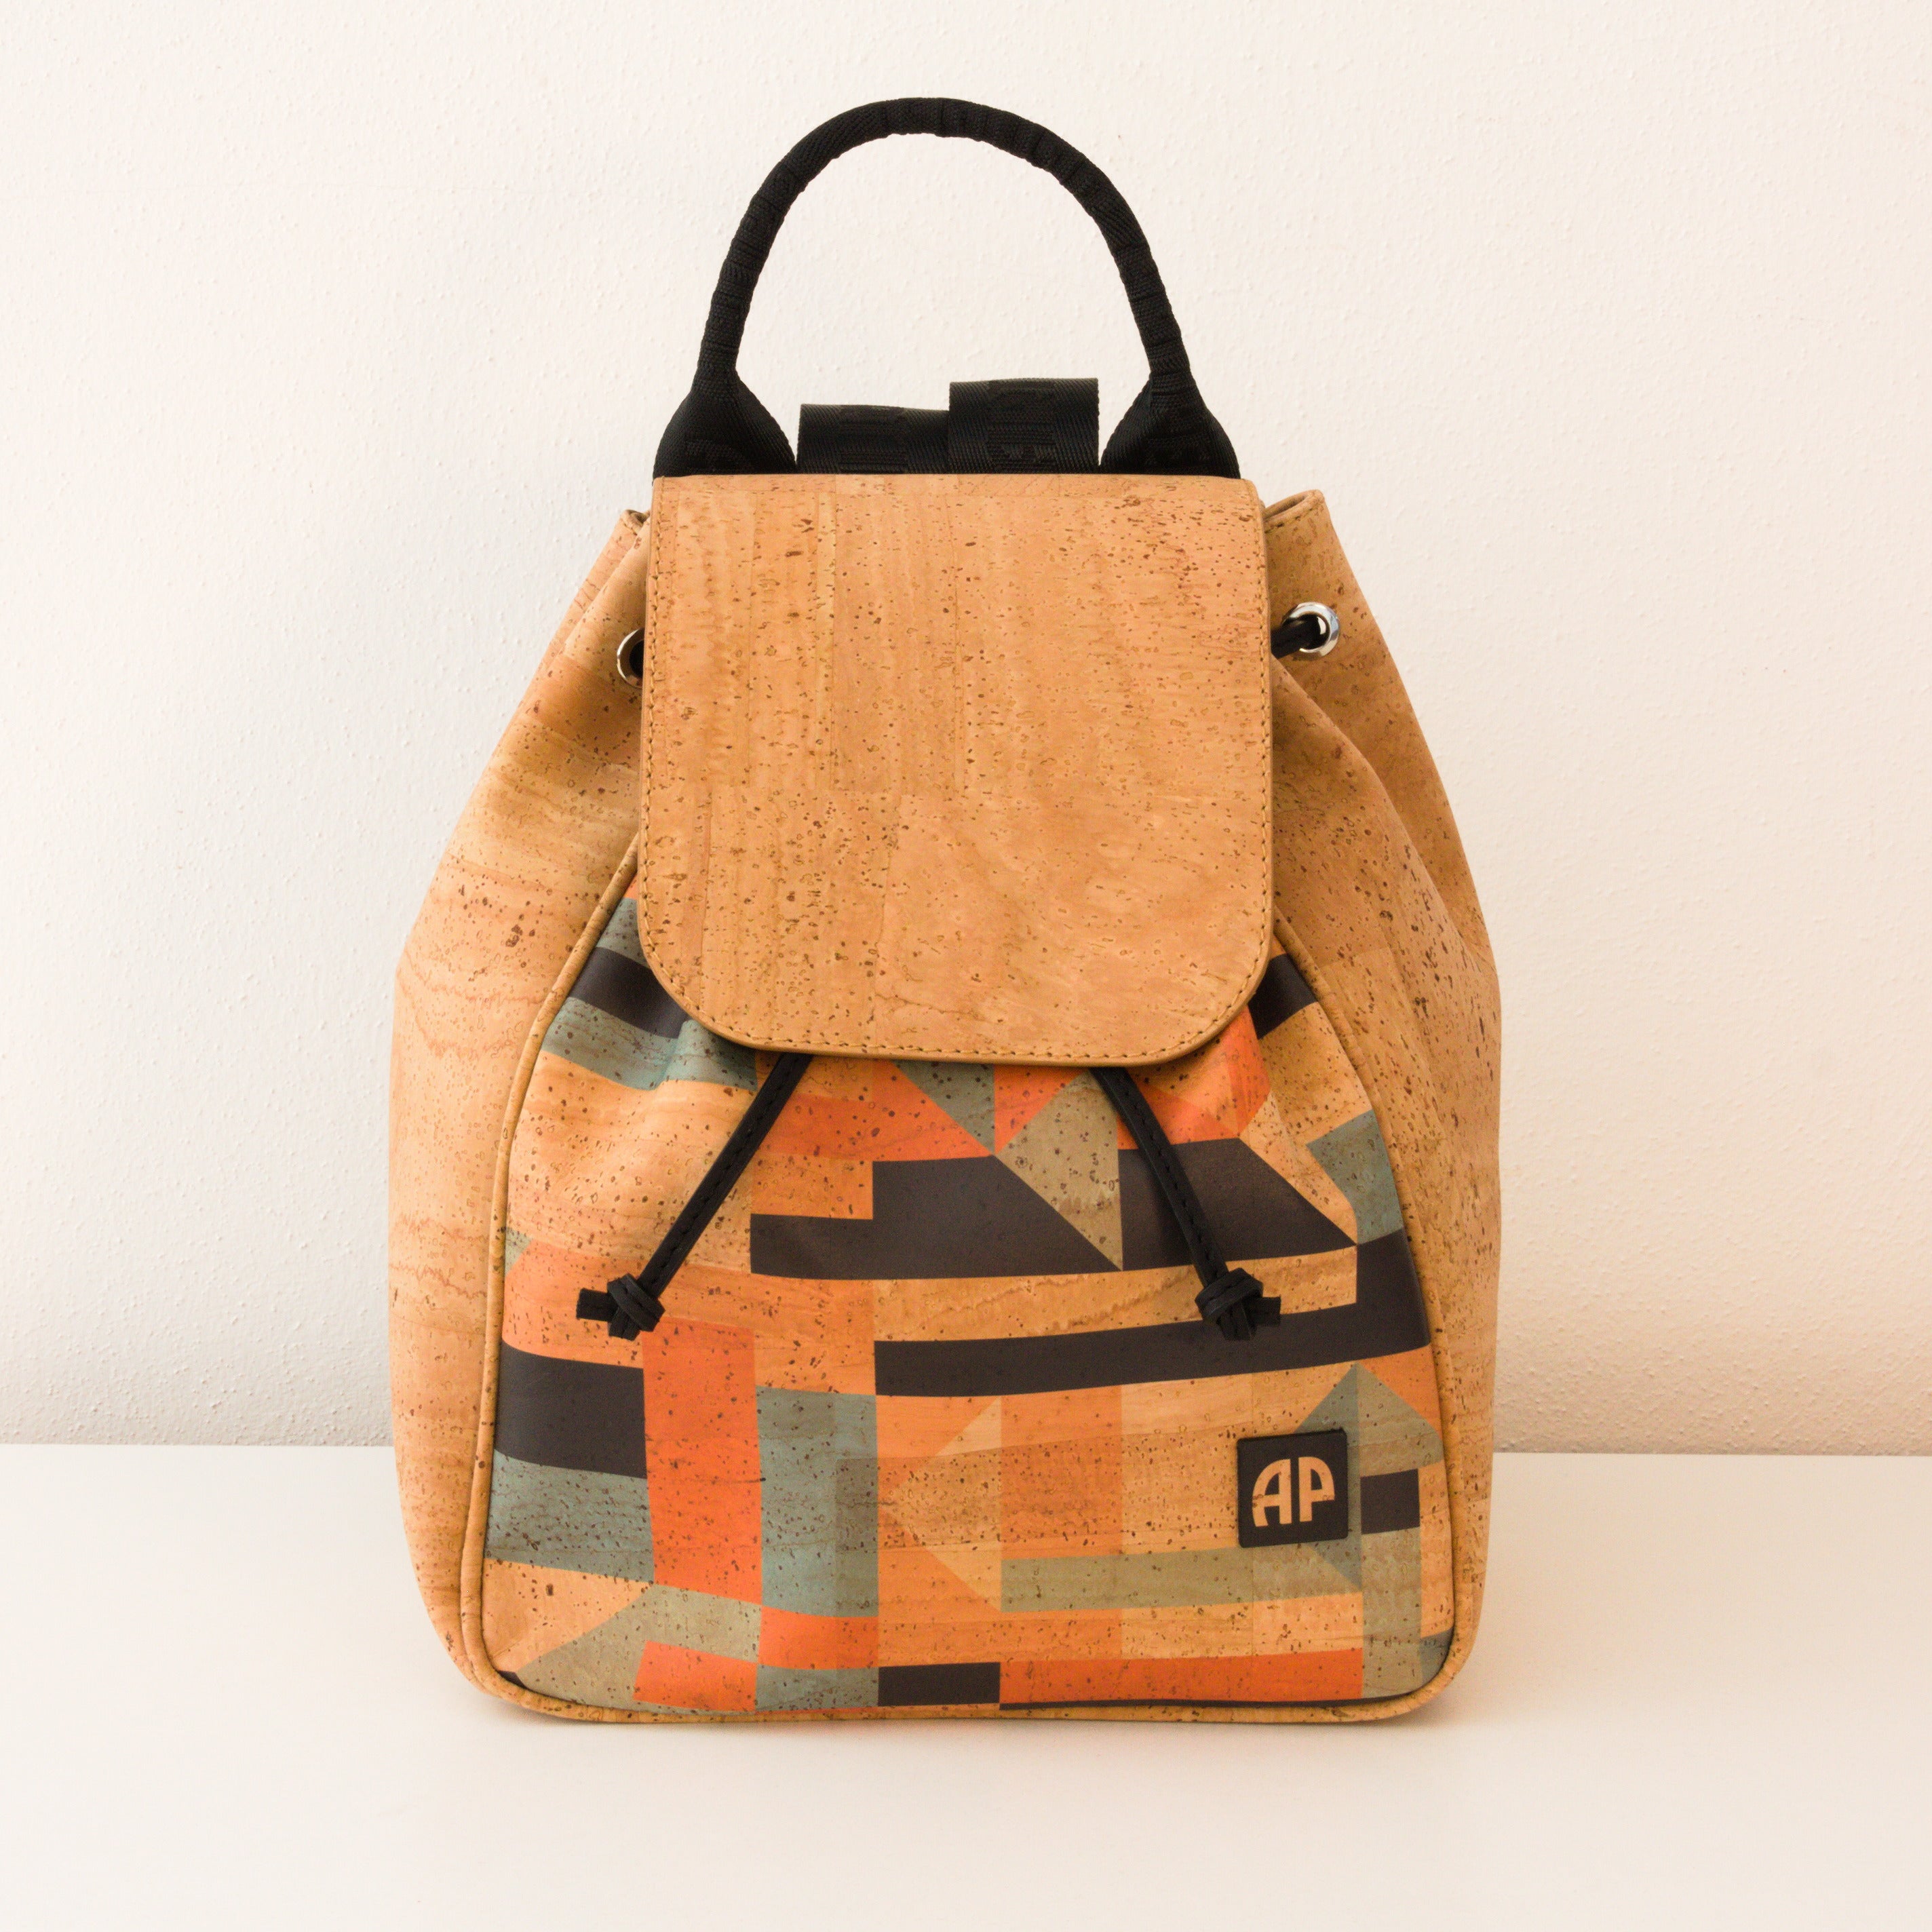 Kork Rucksack * in 2 Designs * Rucksack für Frauen * Backpack aus Kork * handmade in Portugal